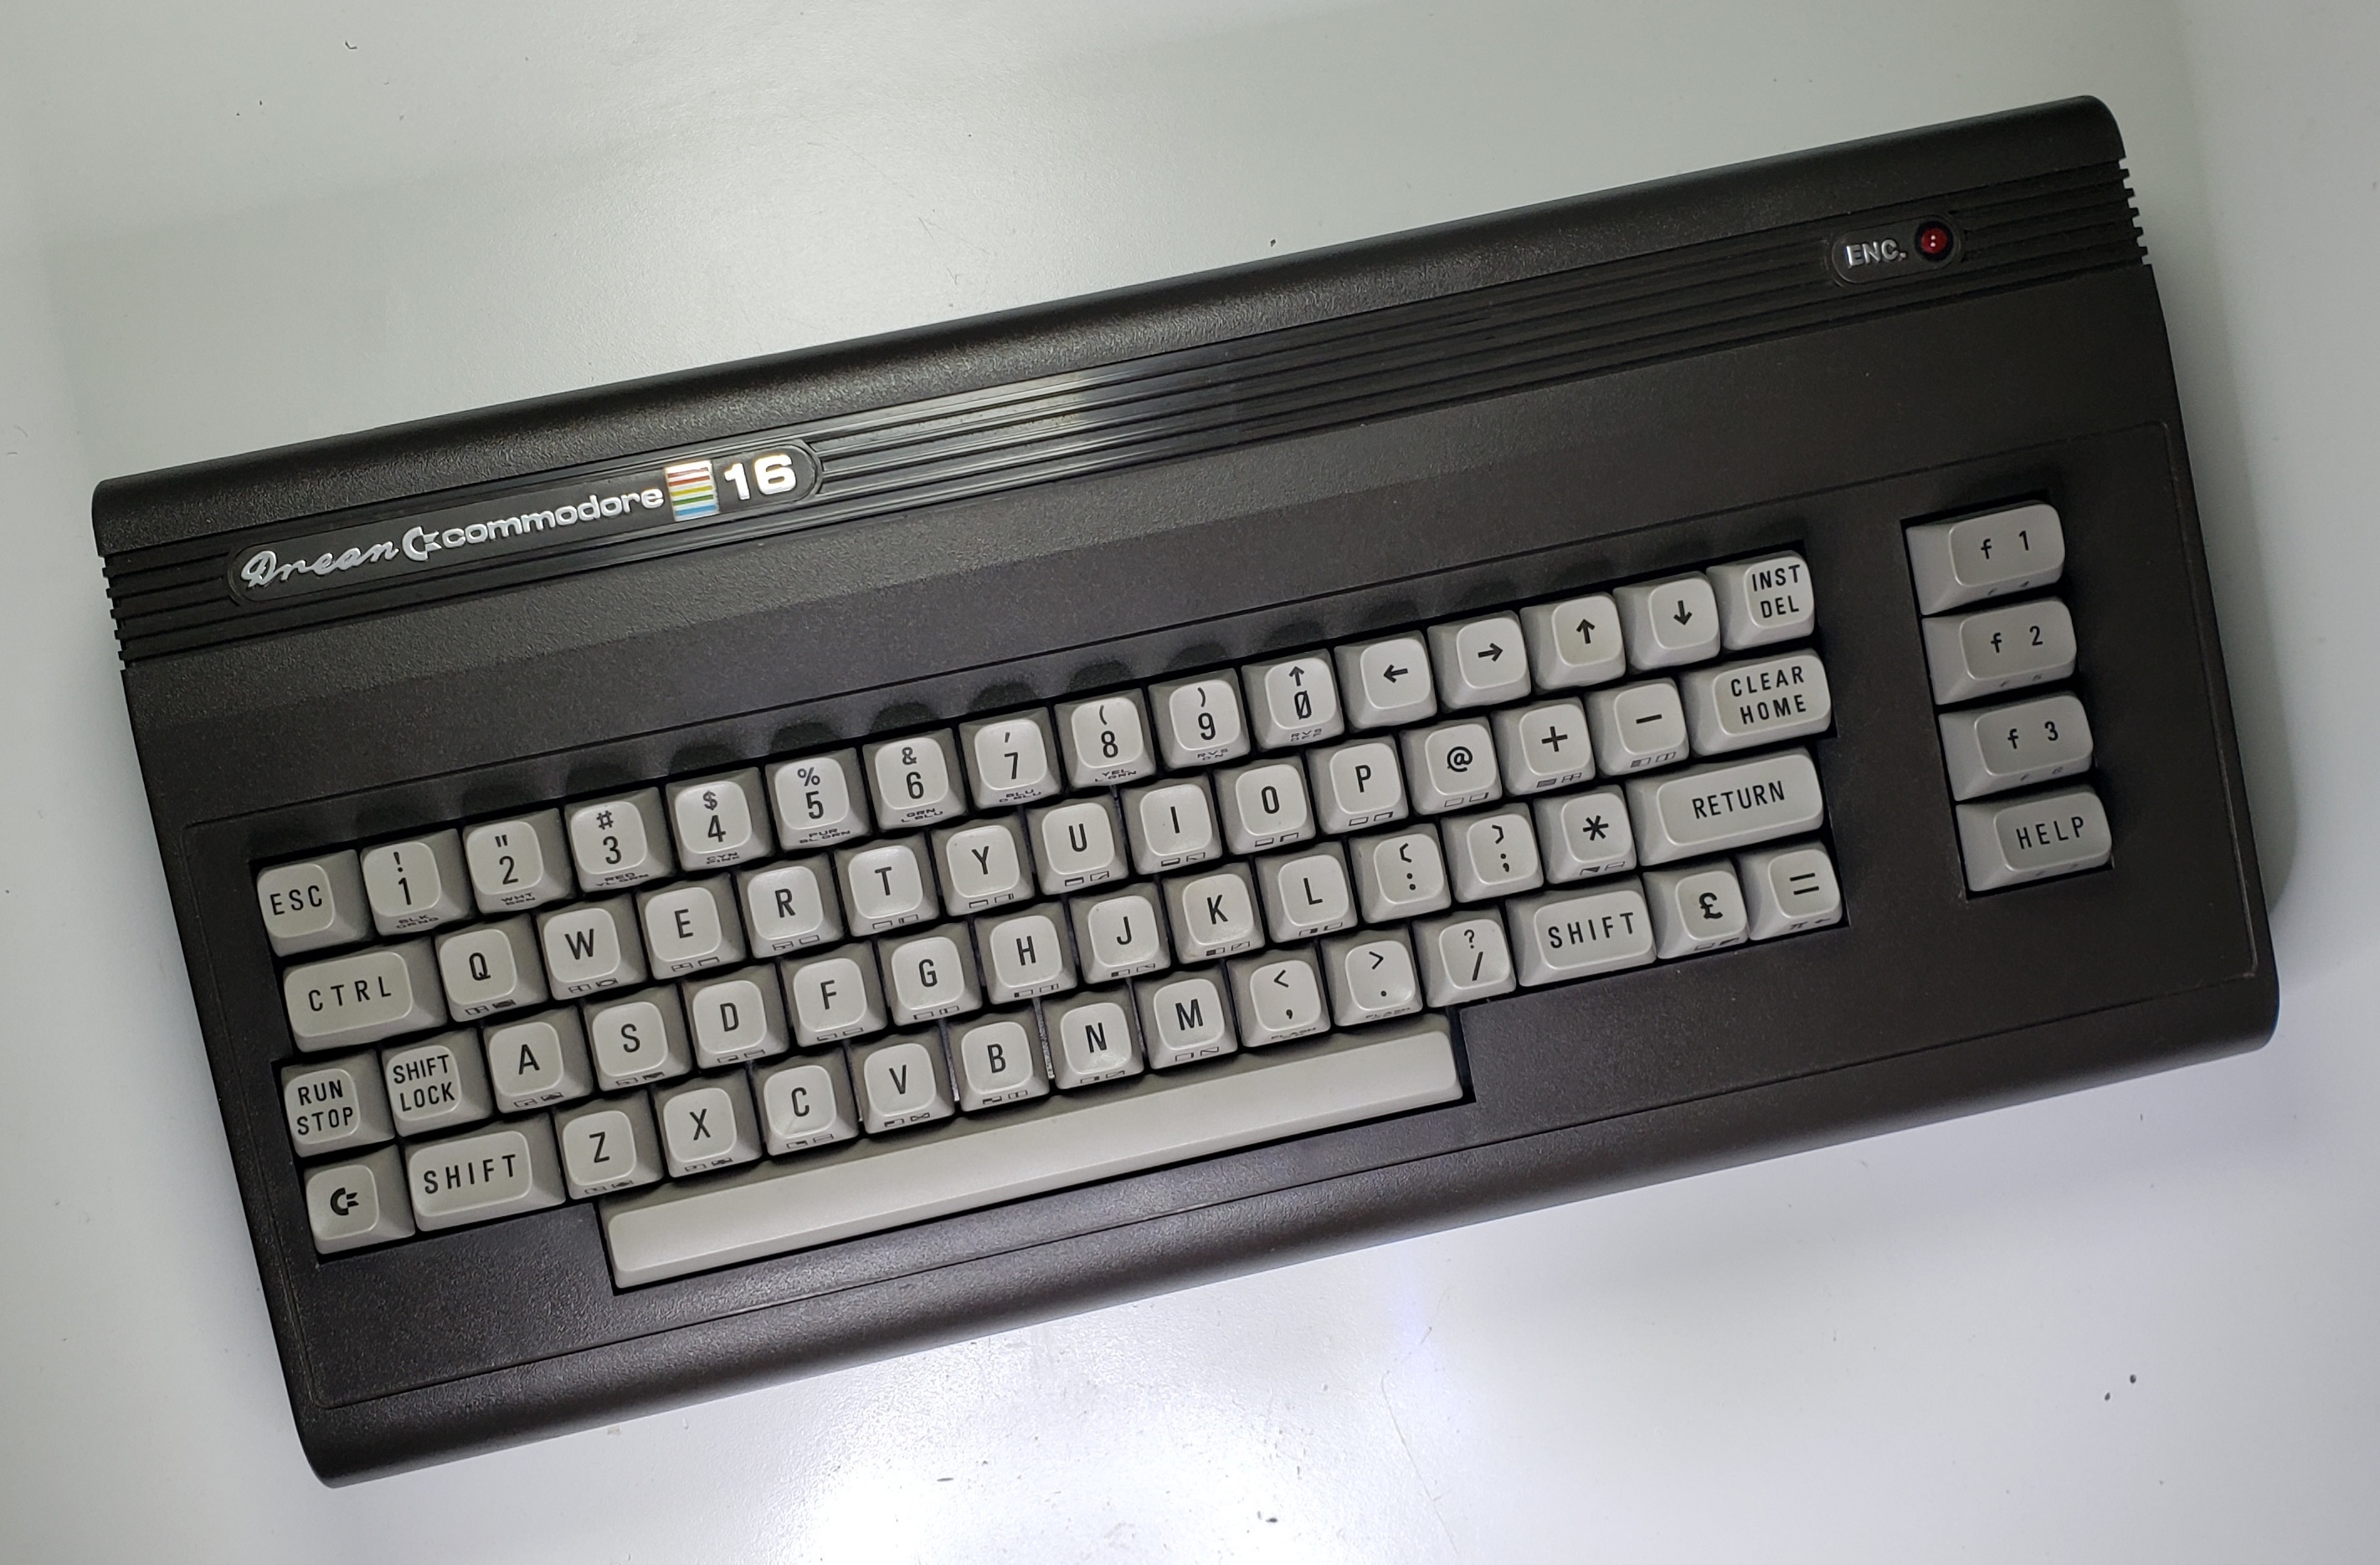 Drean Commodore DC16: 006702_P